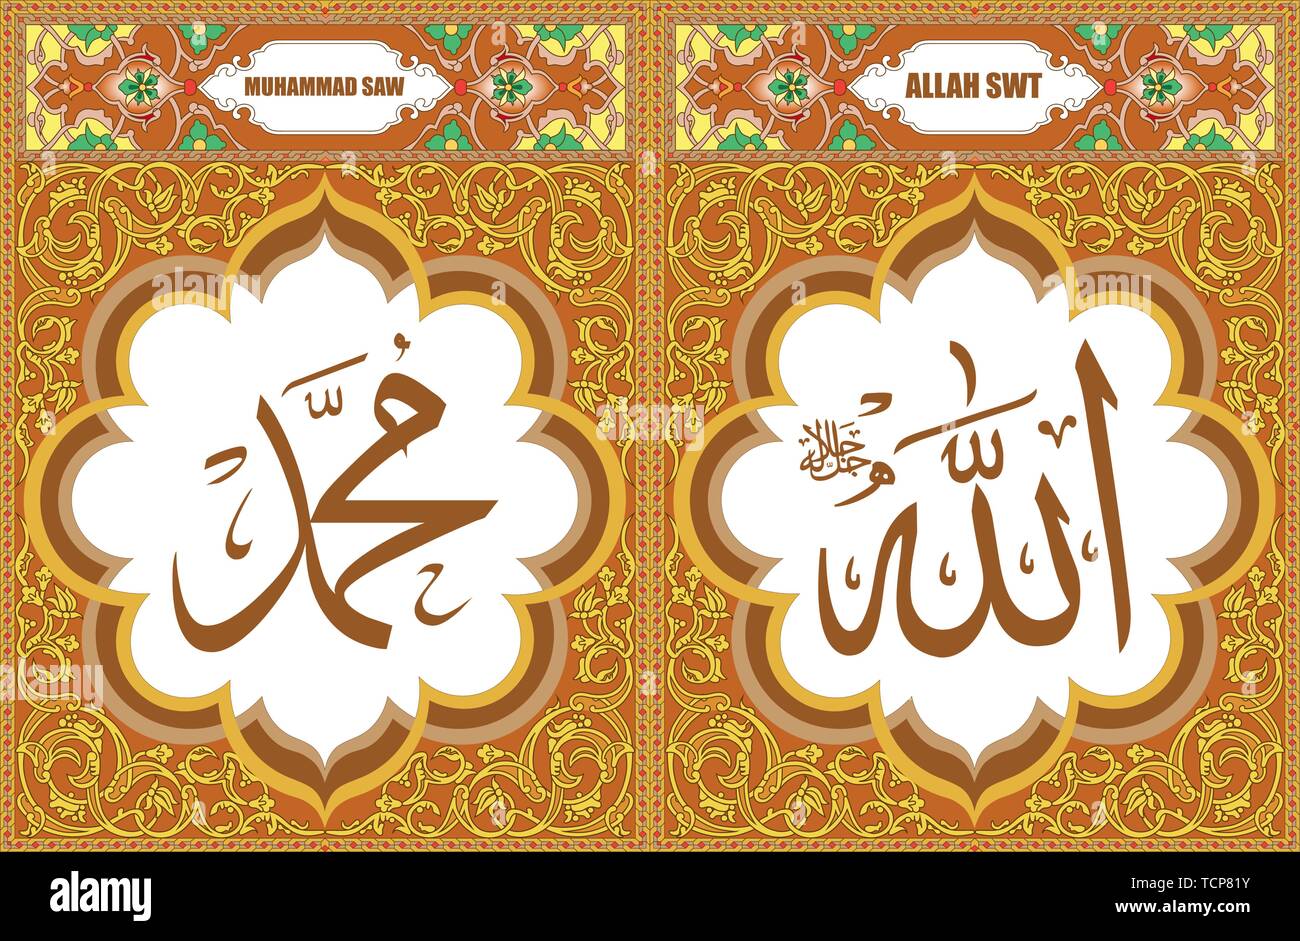 Allah & Muhammad Islamic Art decorating wall art Stock Vector